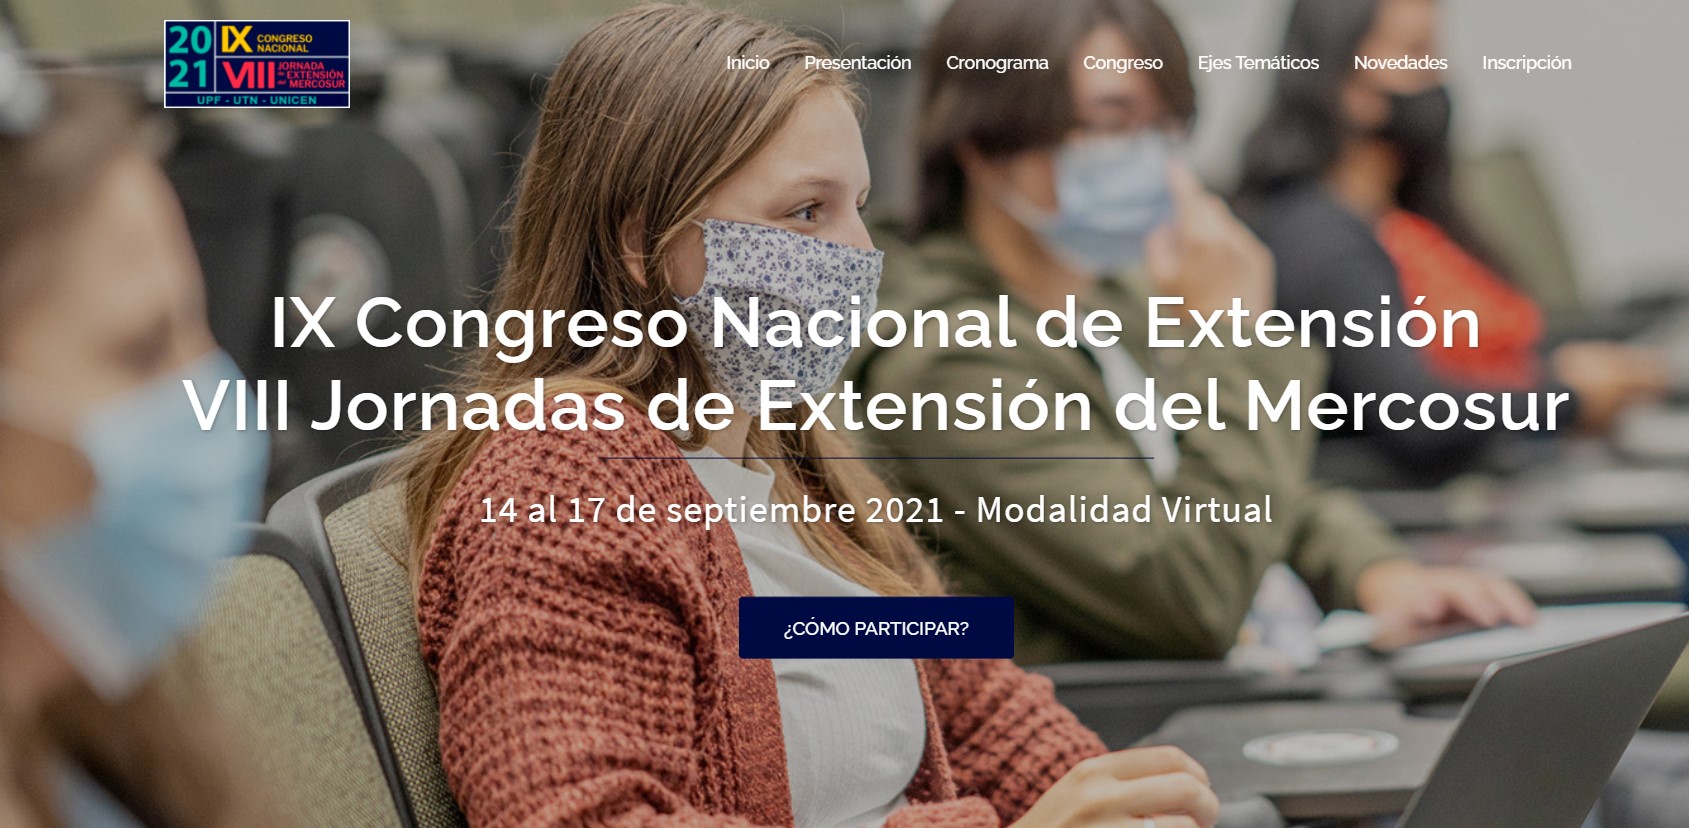  IX Congreso Nacional de Extensión y  VIII Jornadas de Extensión del Mercosur